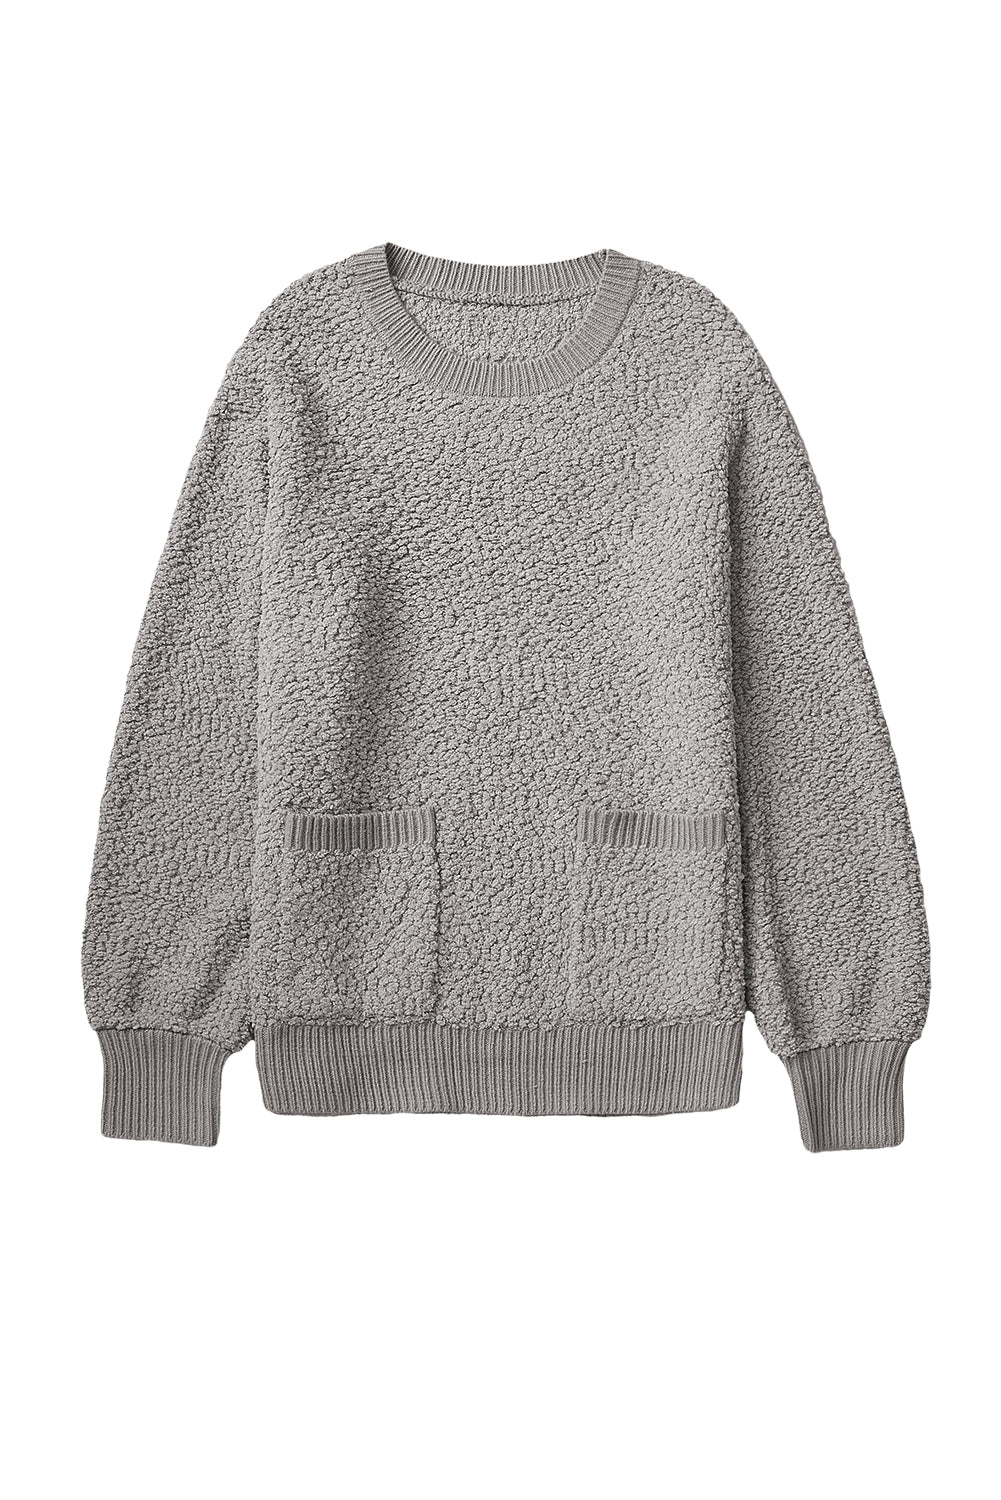 Pull gris en tricot pop-corn à double poches et bordures côtelées